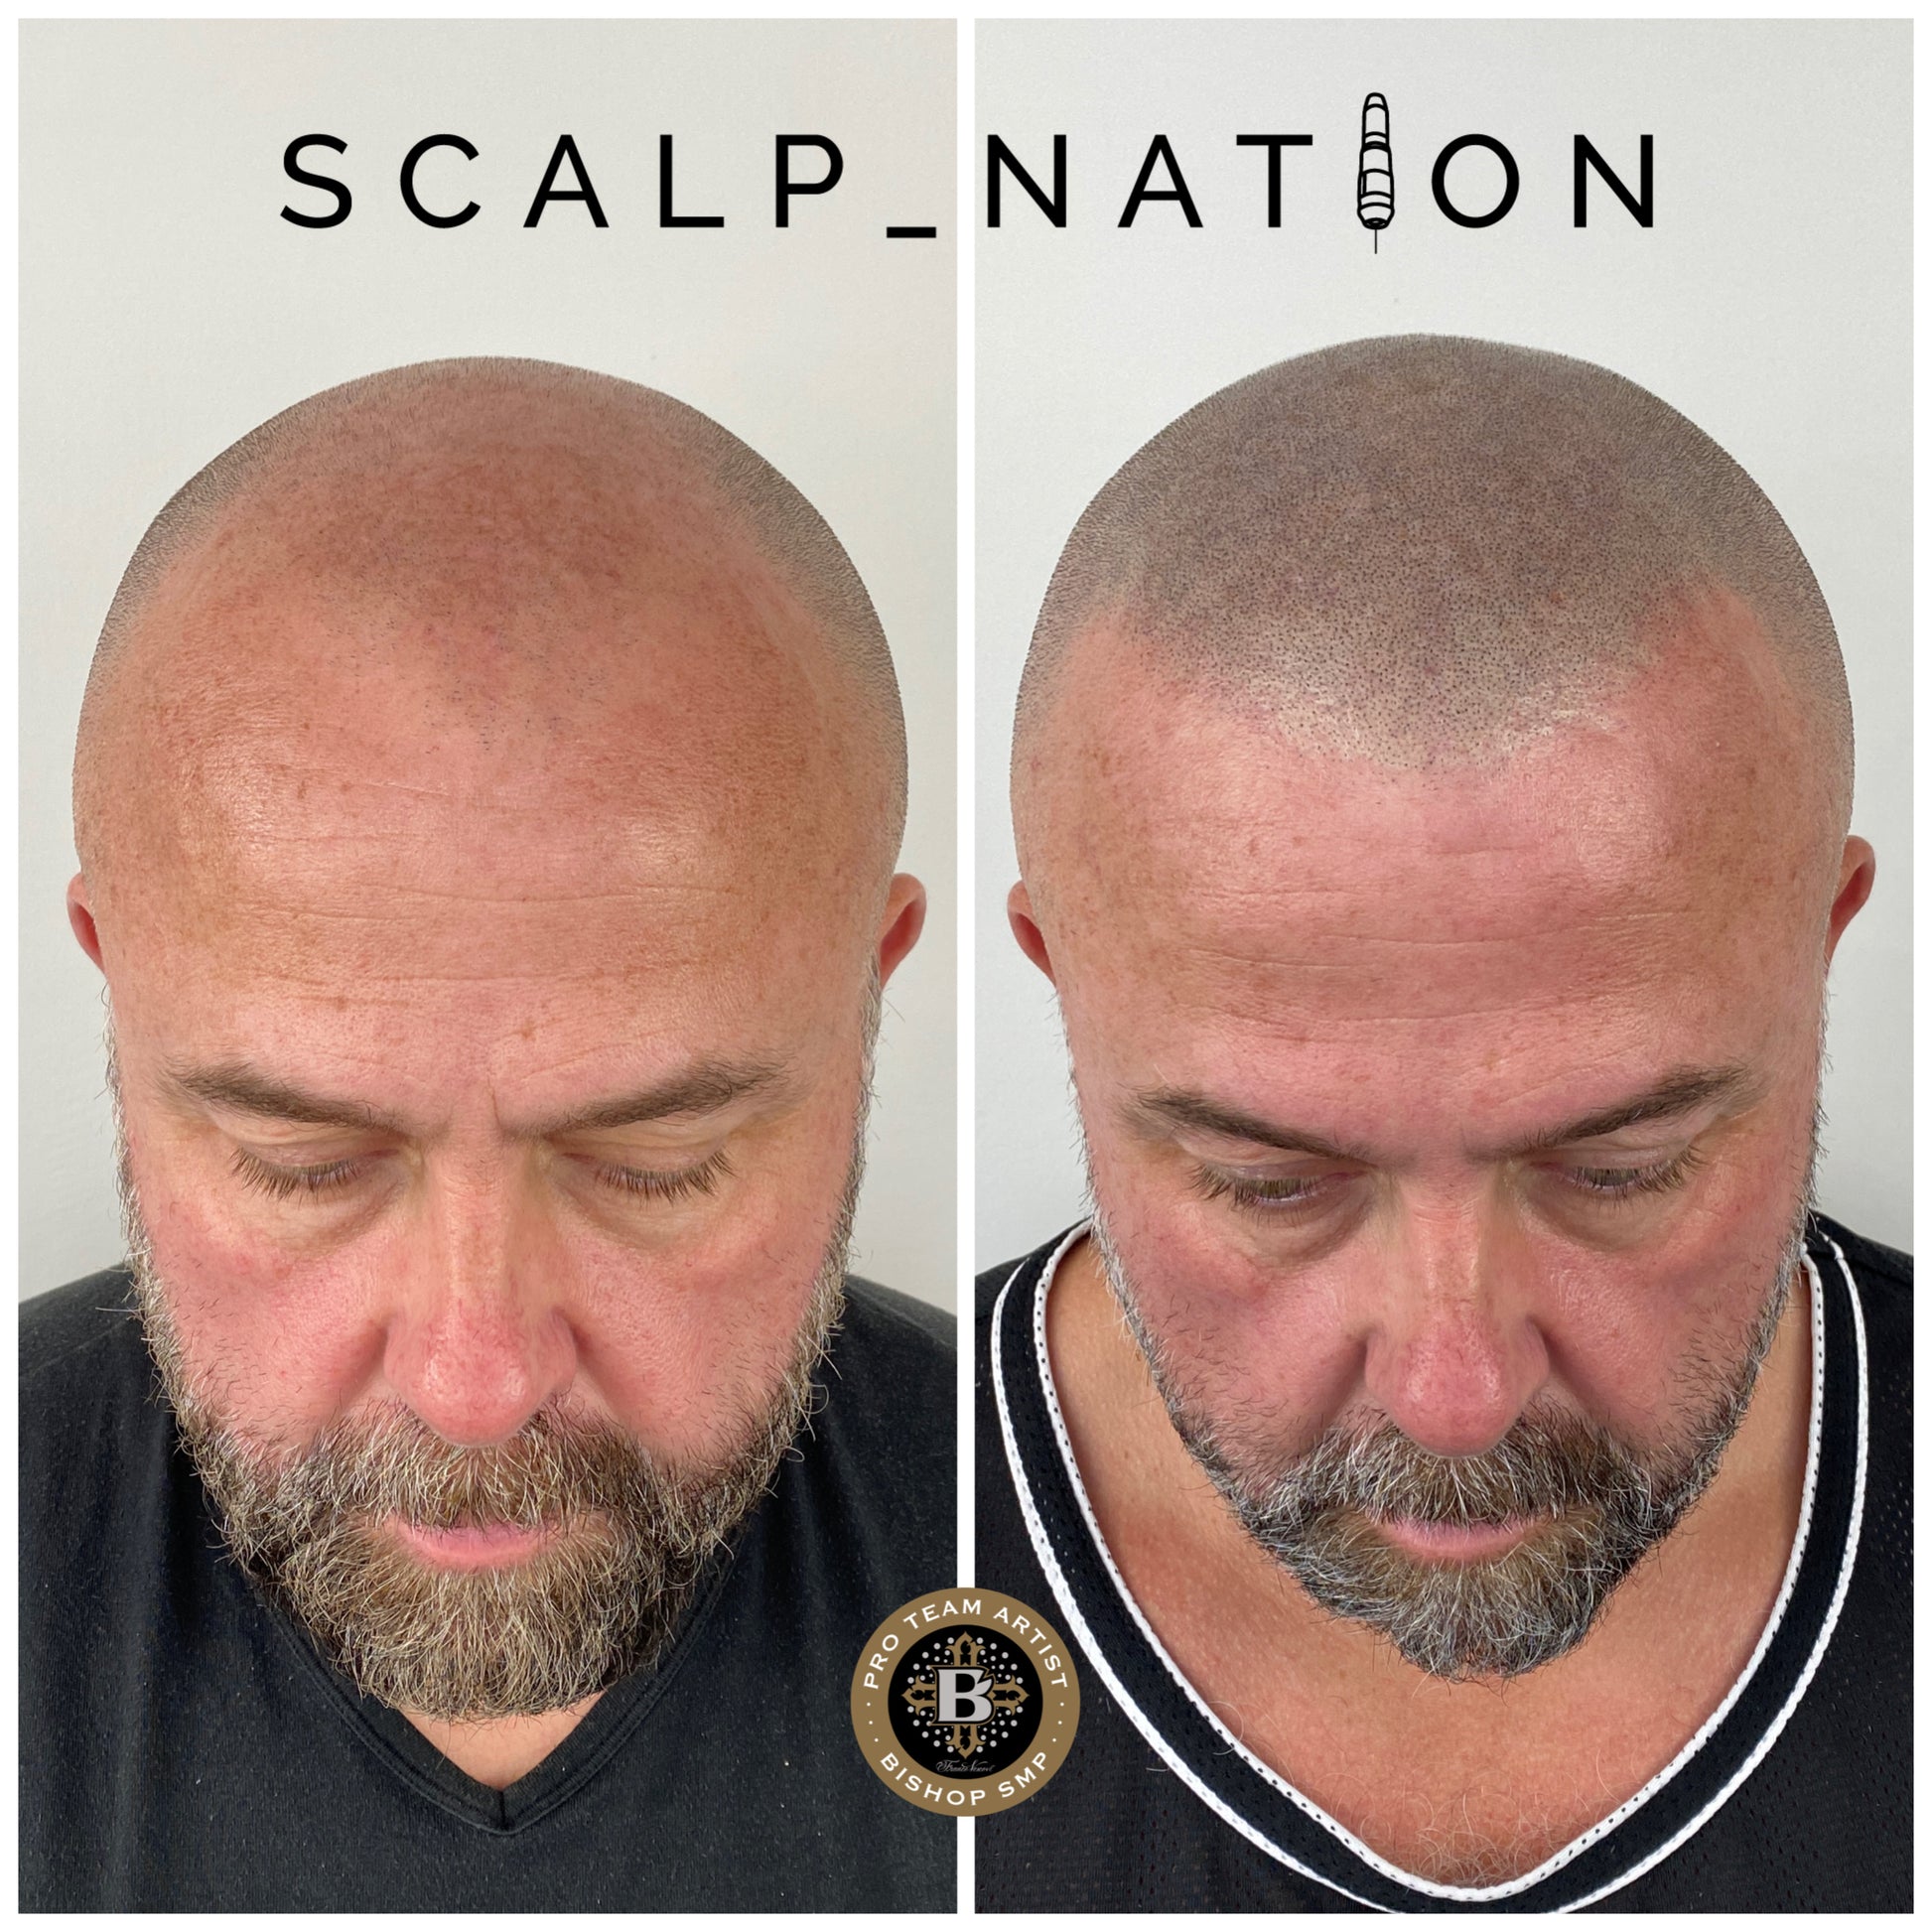 Scalp Micropigmentation Men